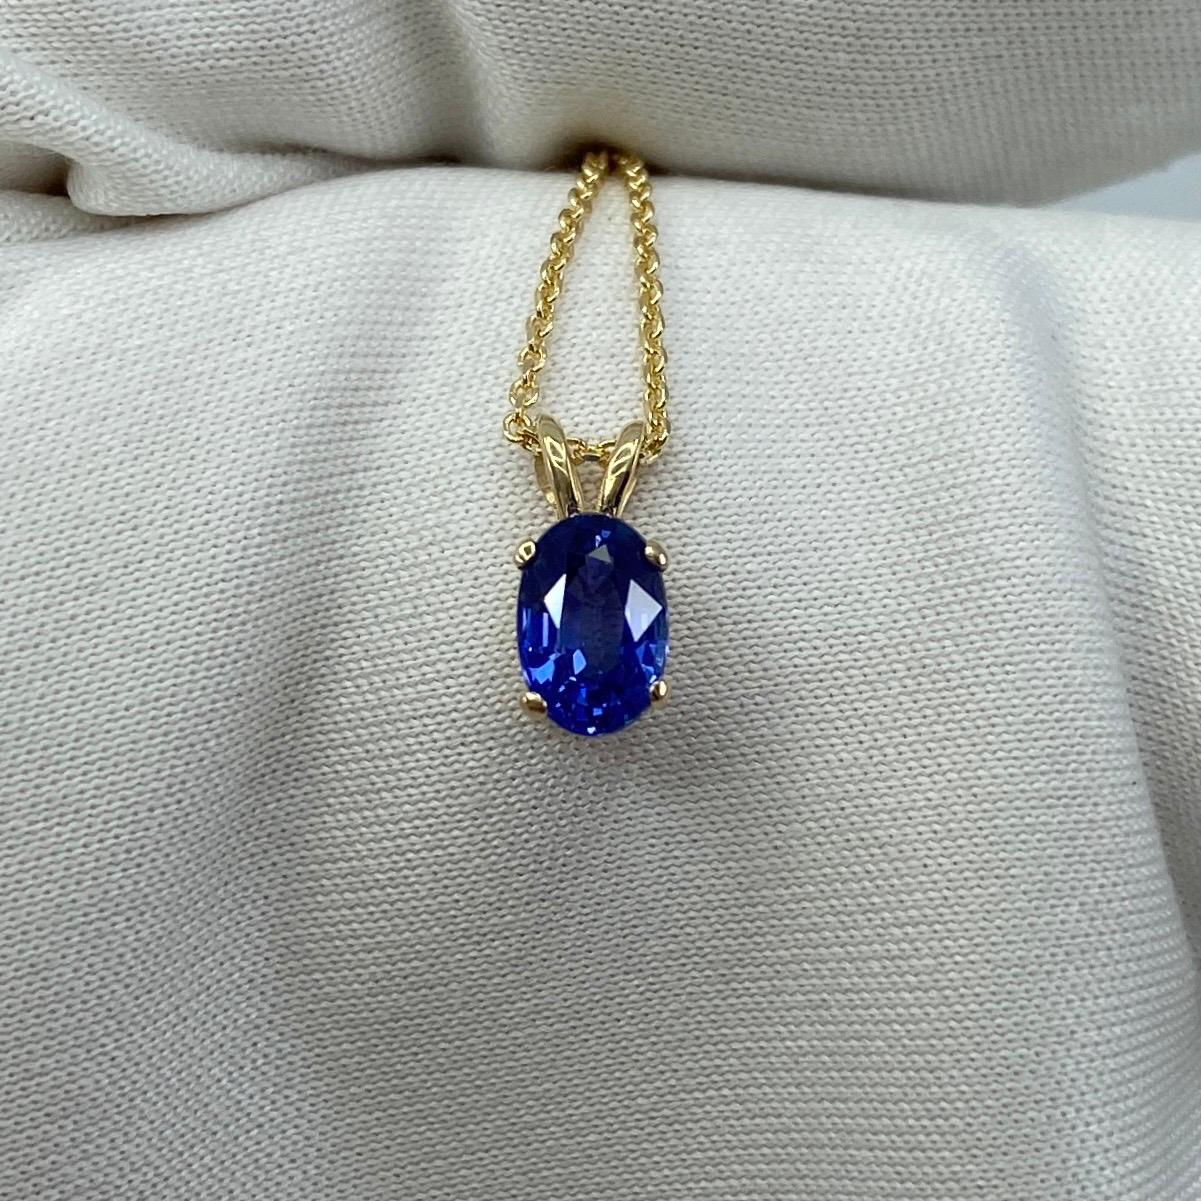 Women's or Men's Fine Vivid Blue Oval Cut Sapphire Yellow Gold Solitaire Pendant Necklace